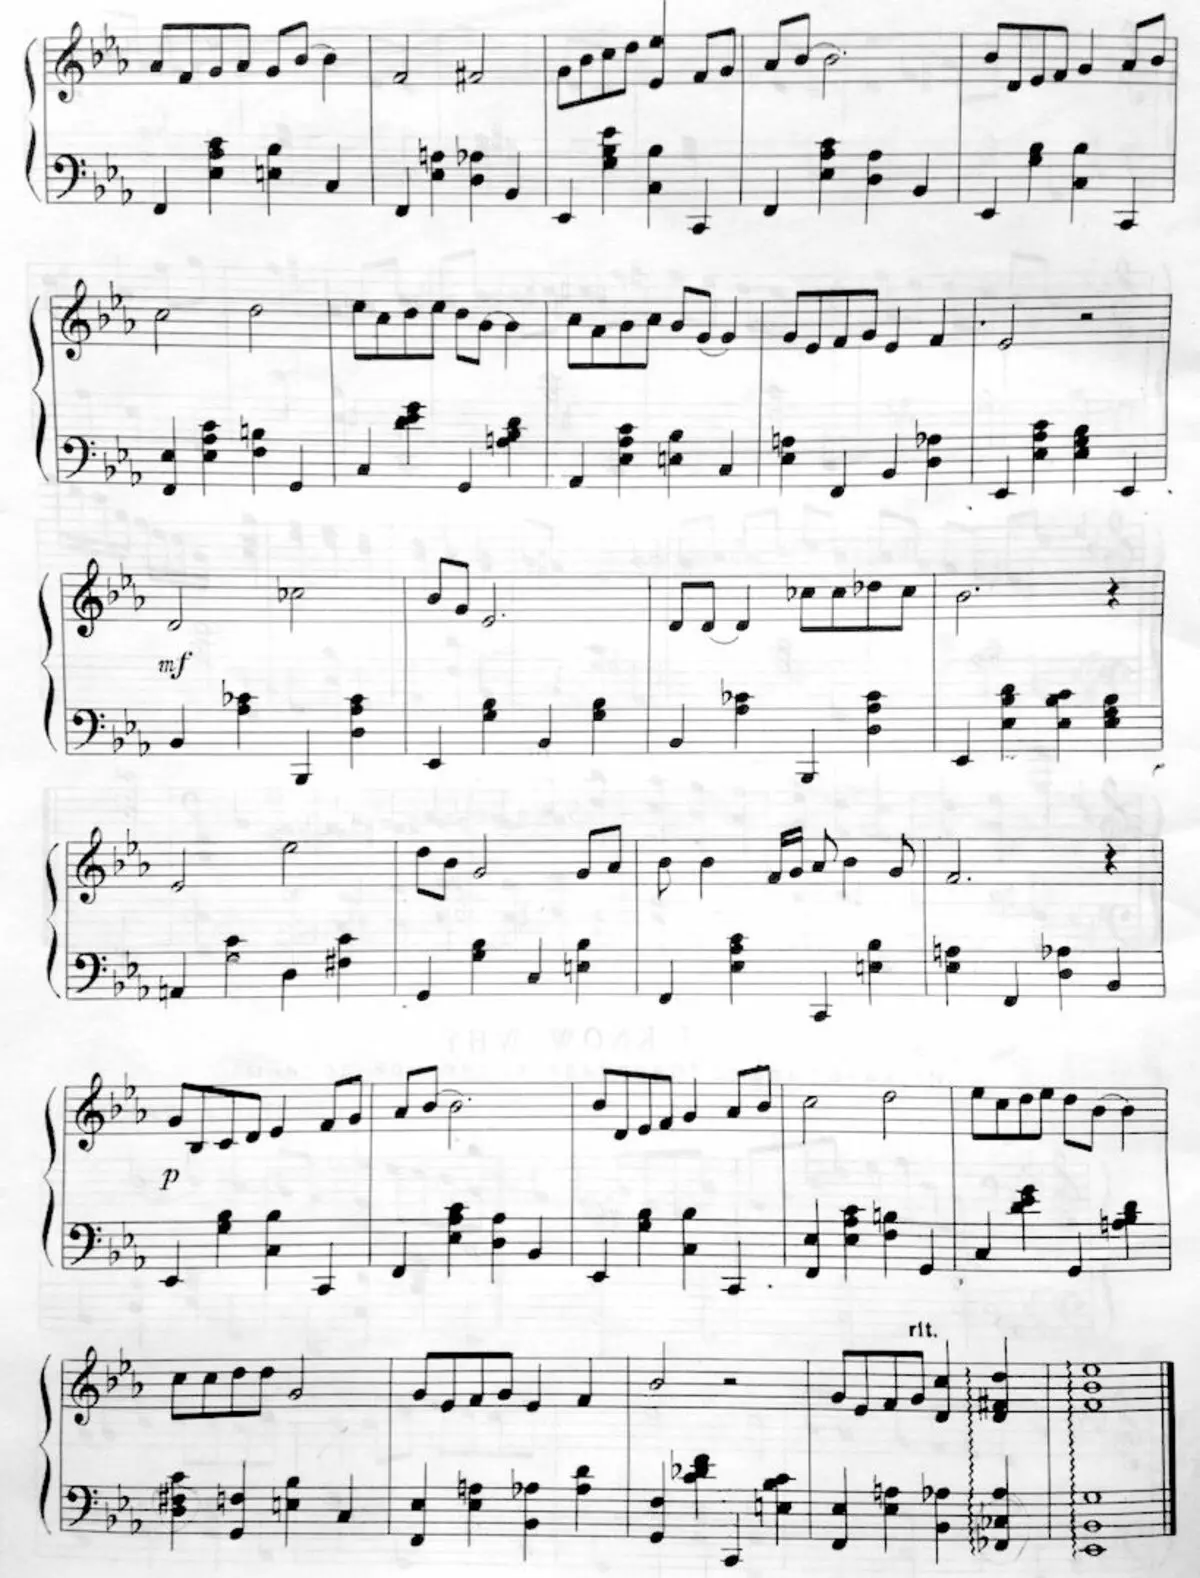 Jazz akkorder til klaver: Akkordsekvenser på klaver, grundlæggende smukke akkorder og kompleks, deres afkodning 25486_11